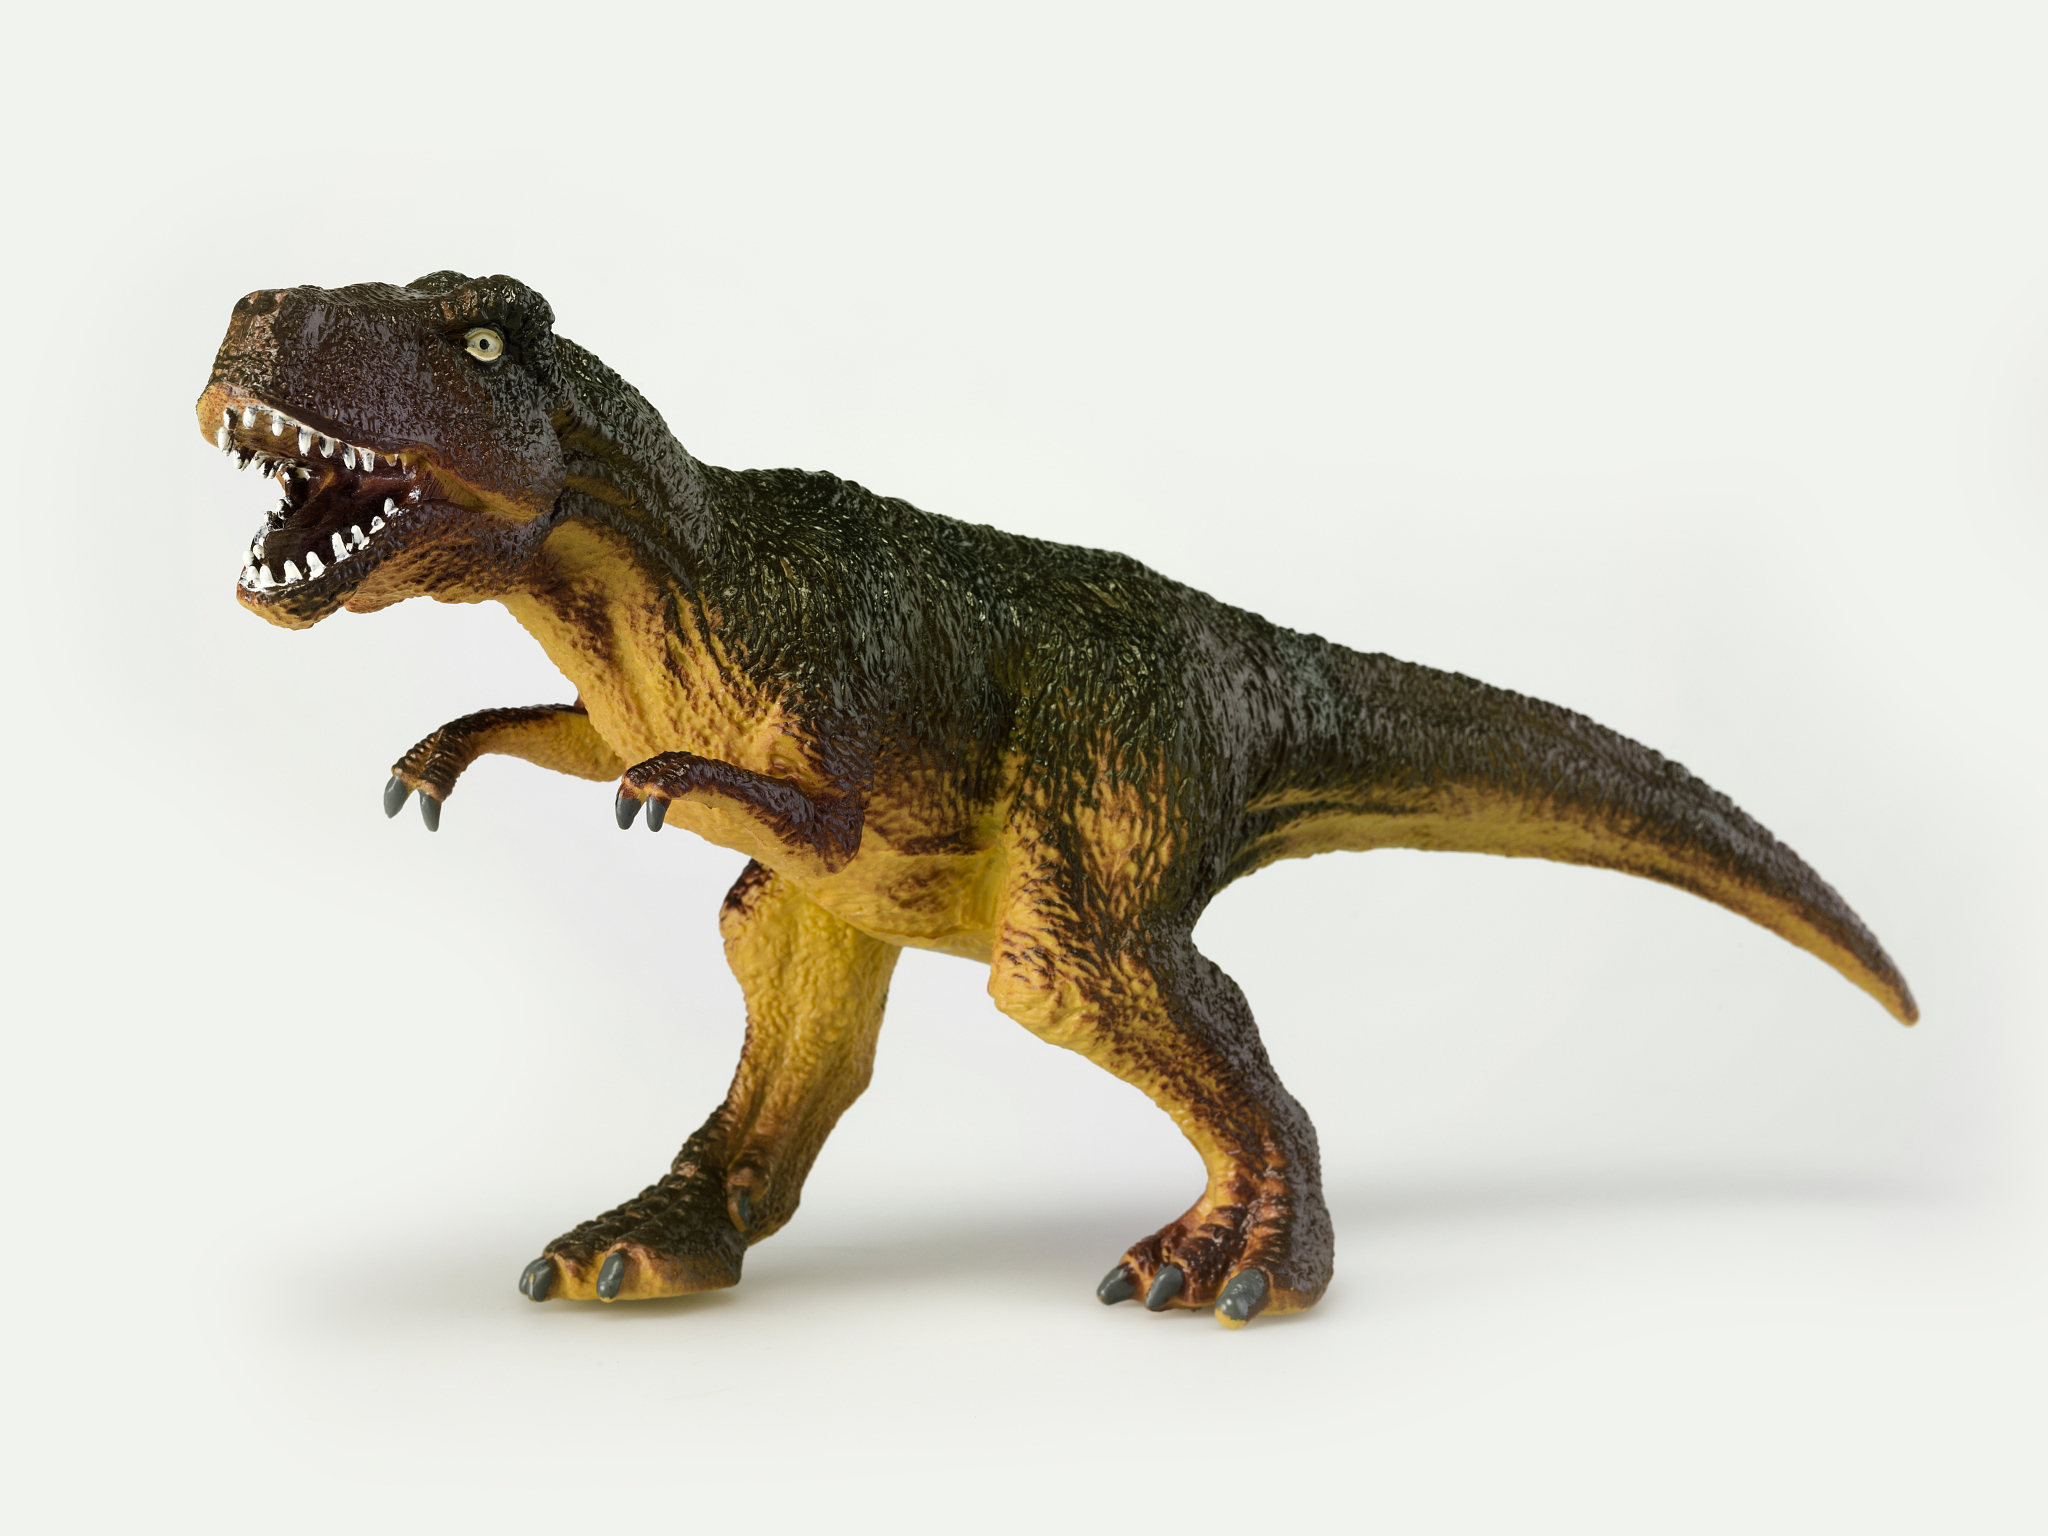 霸王龙是侏罗纪的还是白垩纪的?侏罗纪有霸王龙吗